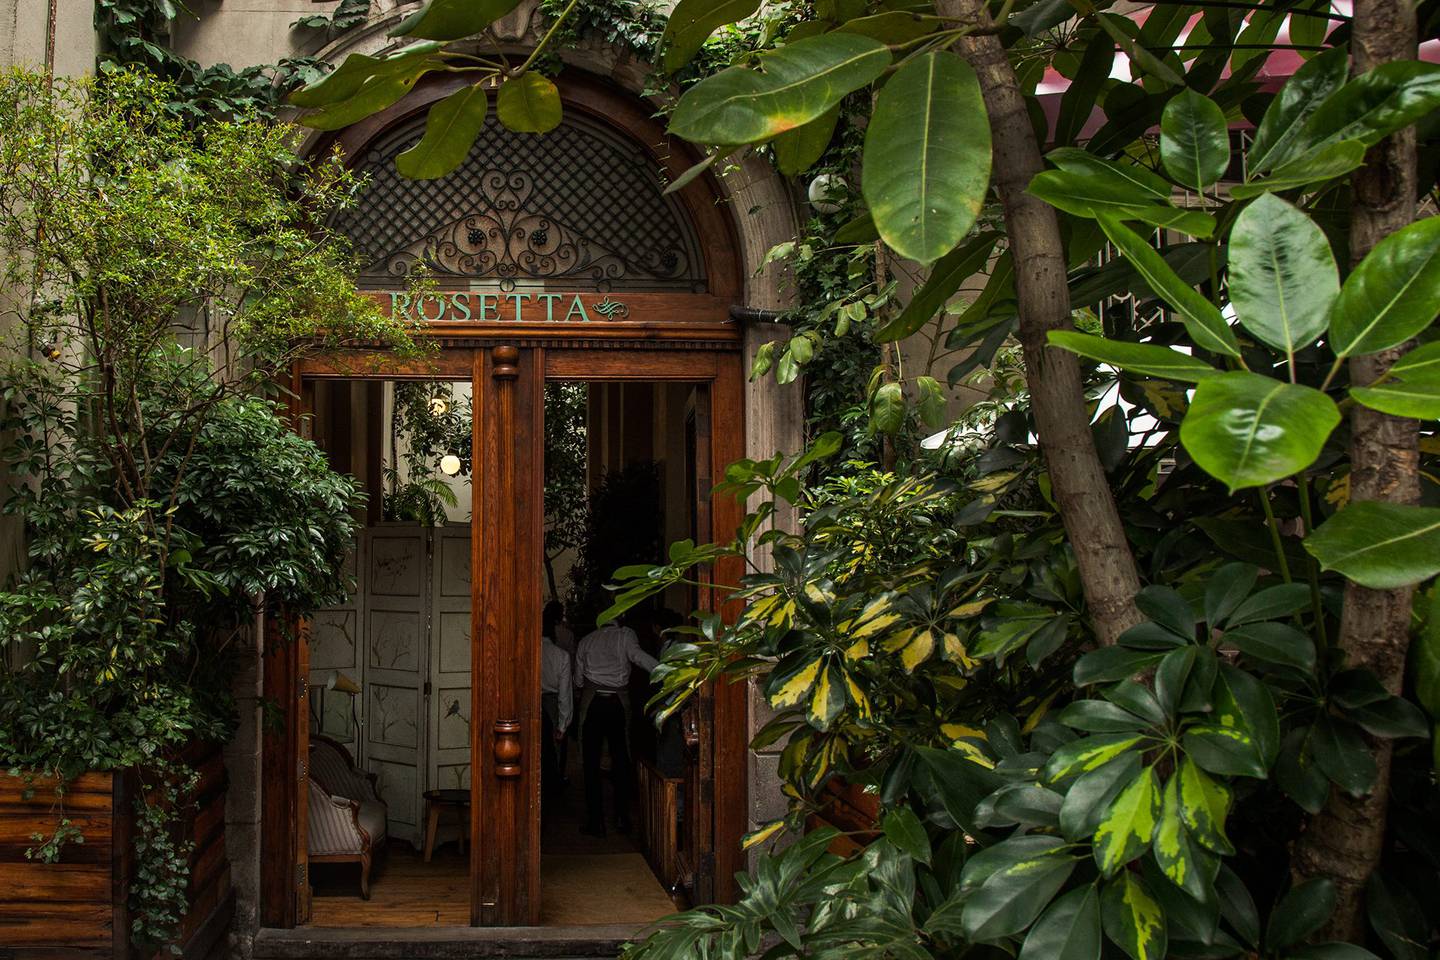 Fachada del restaurante Rosetta, propiedad de Elena Reygadas, en la colonia Roma, Ciudad de México (Imagen: Página de Facebook de Rosetta)